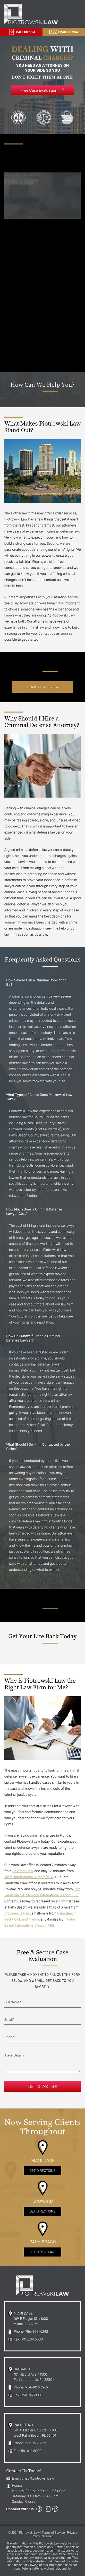 Piotrowski Law - Miami FL Lawyers